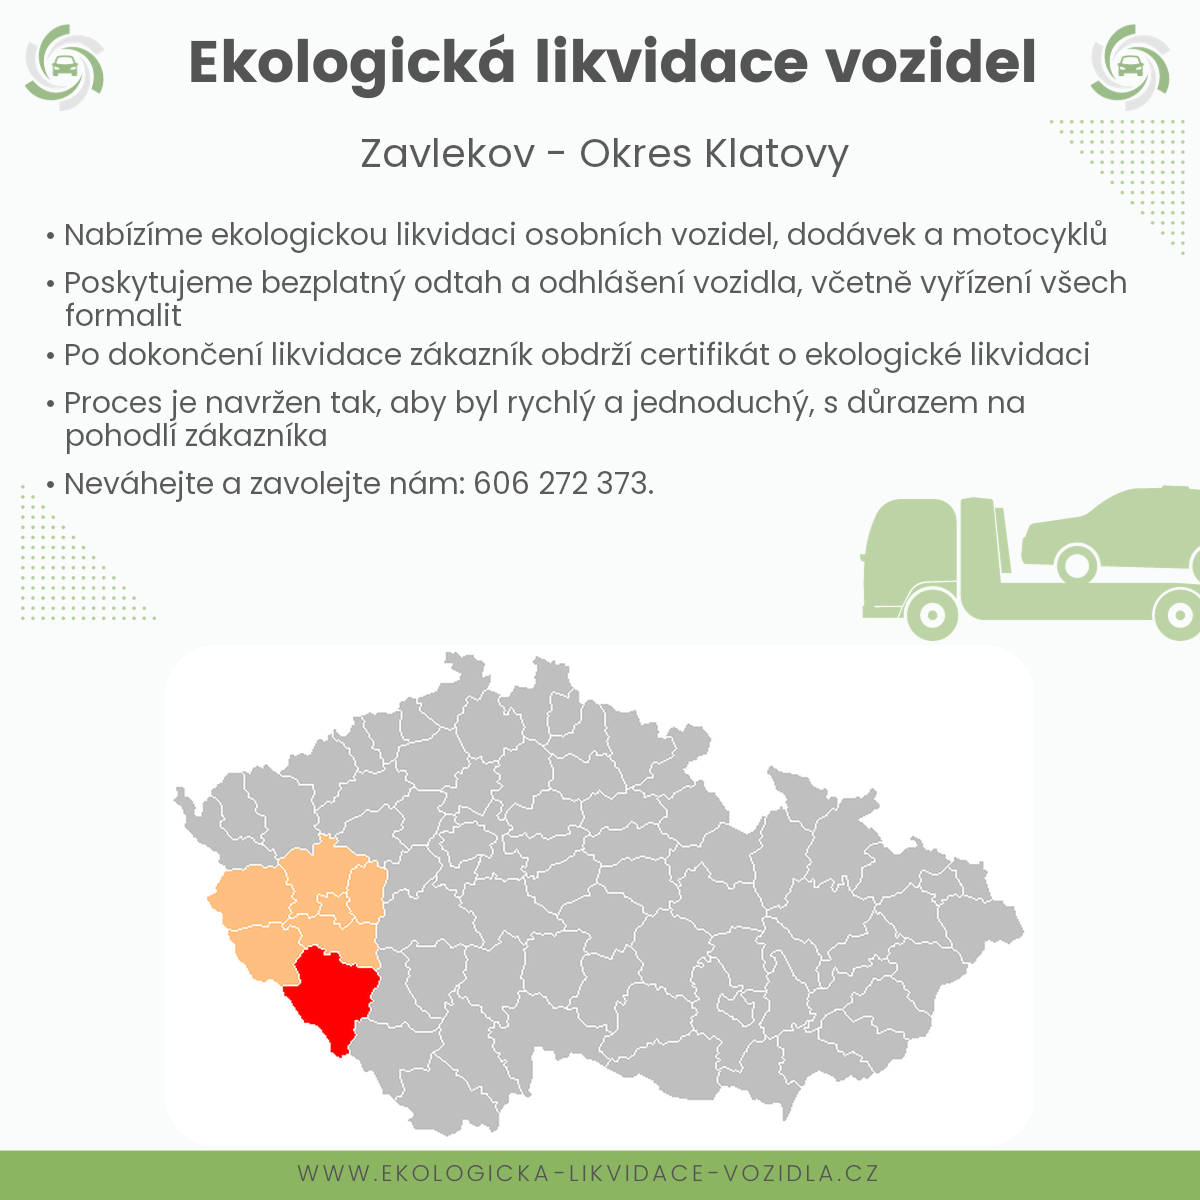 likvidace vozidel - Zavlekov